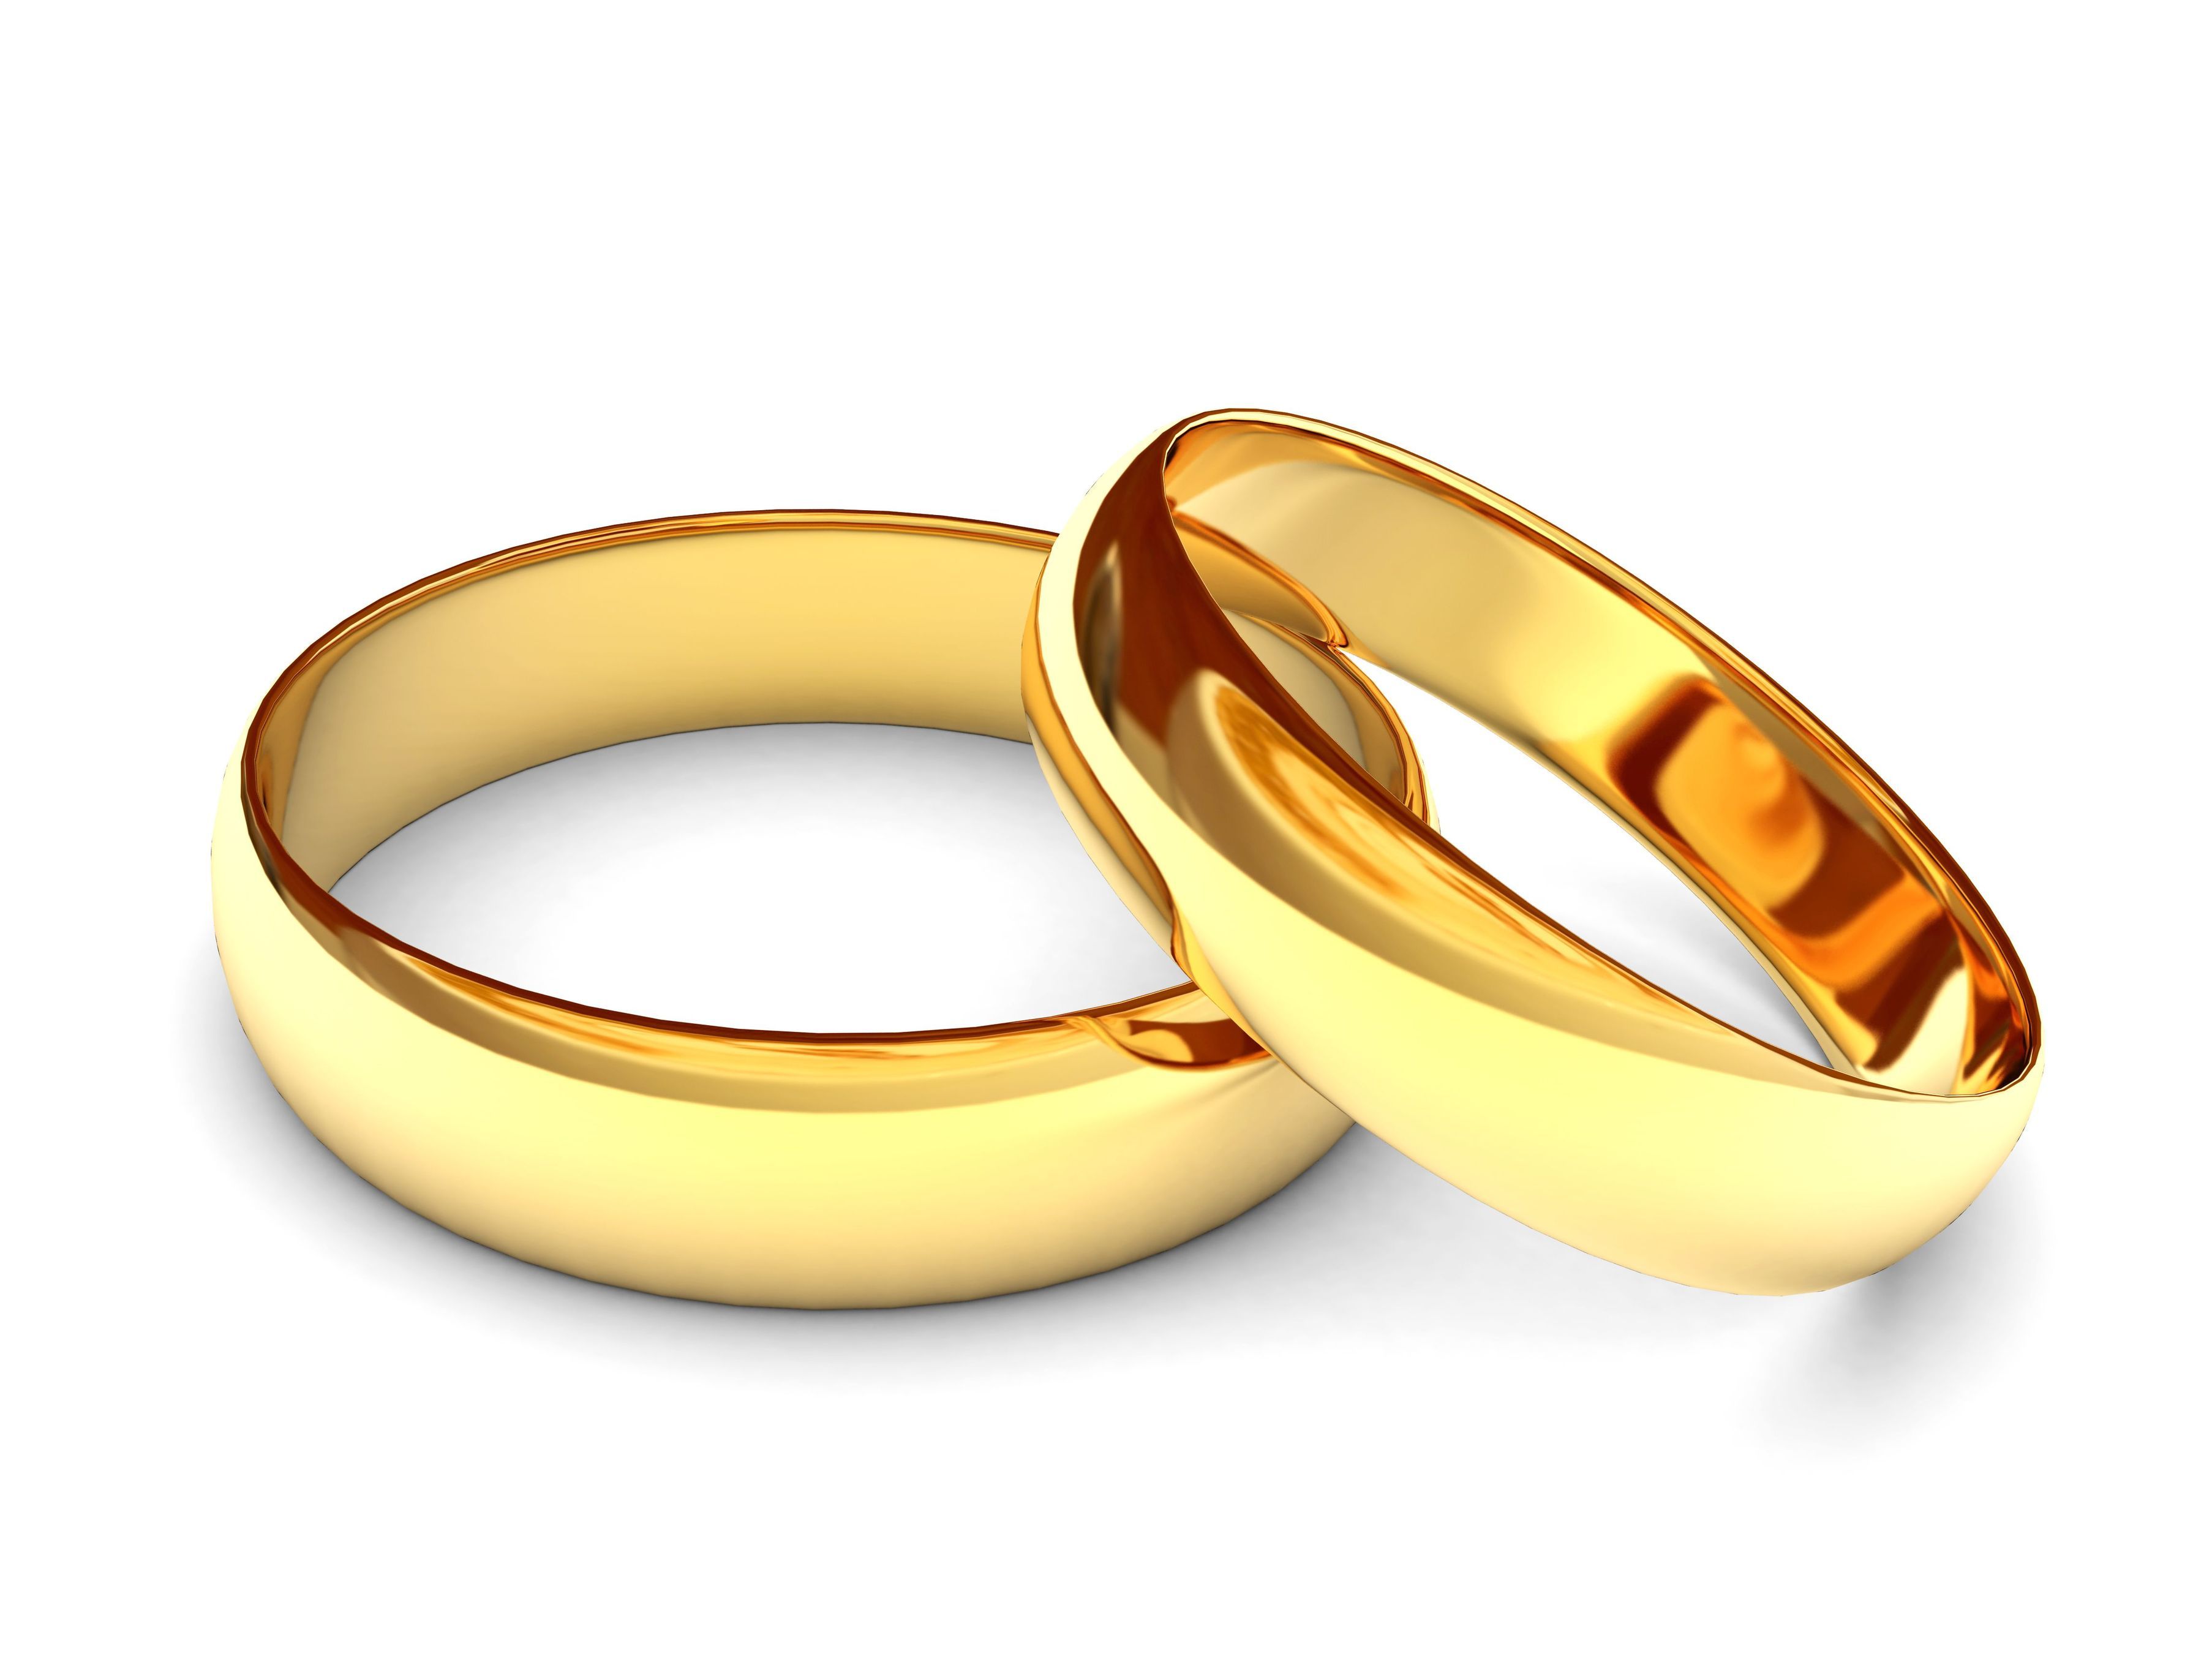 Διαδικτυακές ιστοσελίδες γνωριμιών για γάμο